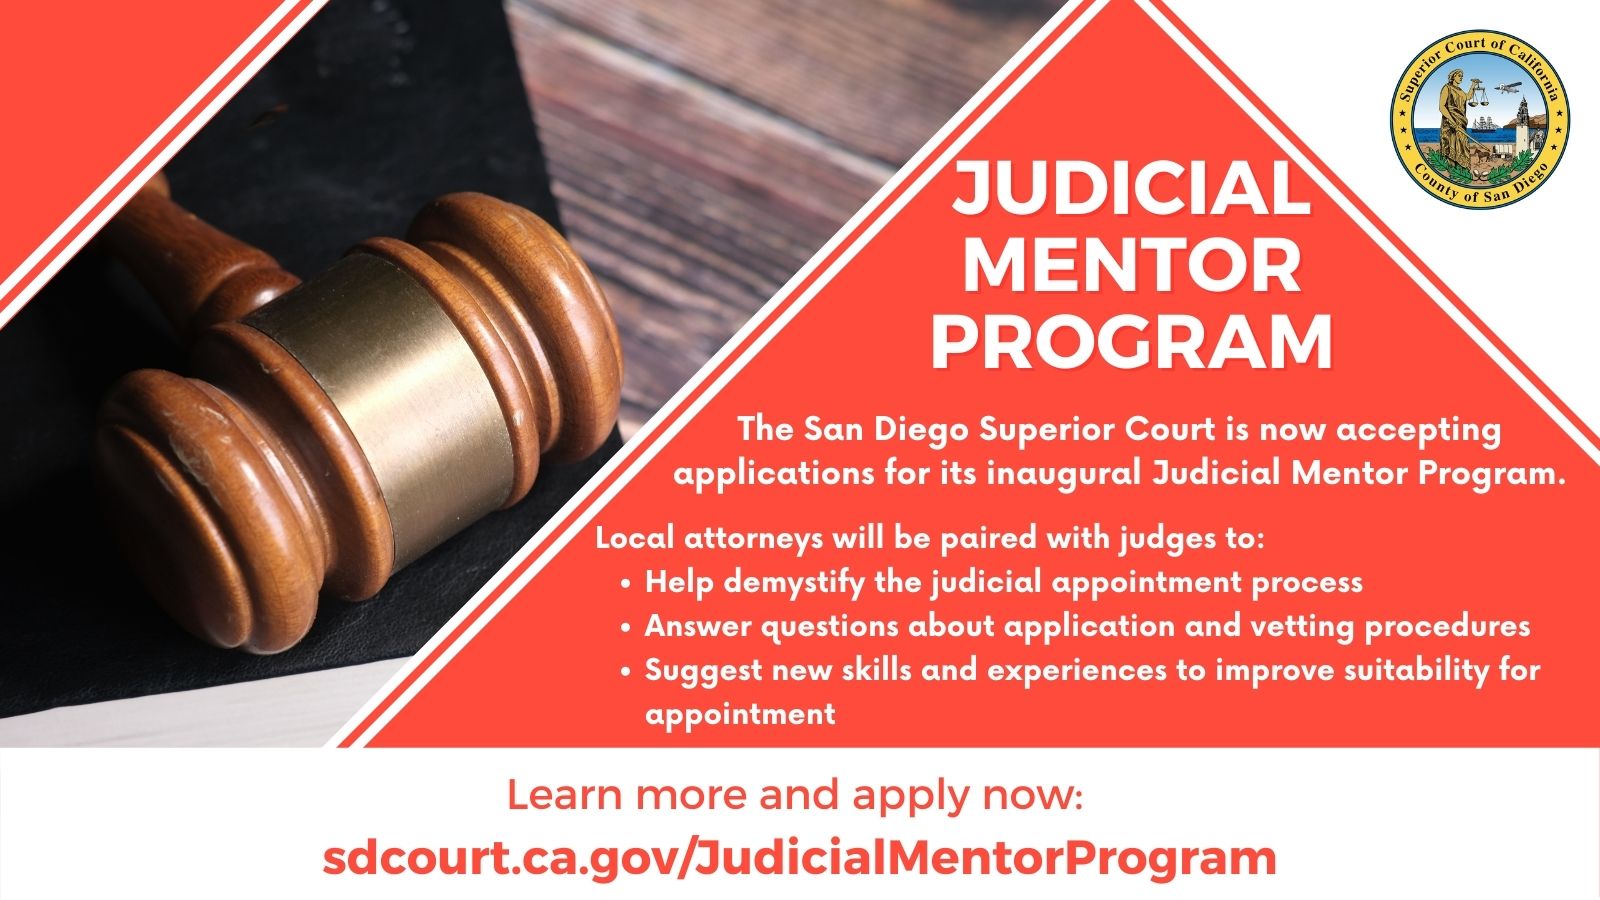 Judicial Mentor Program image